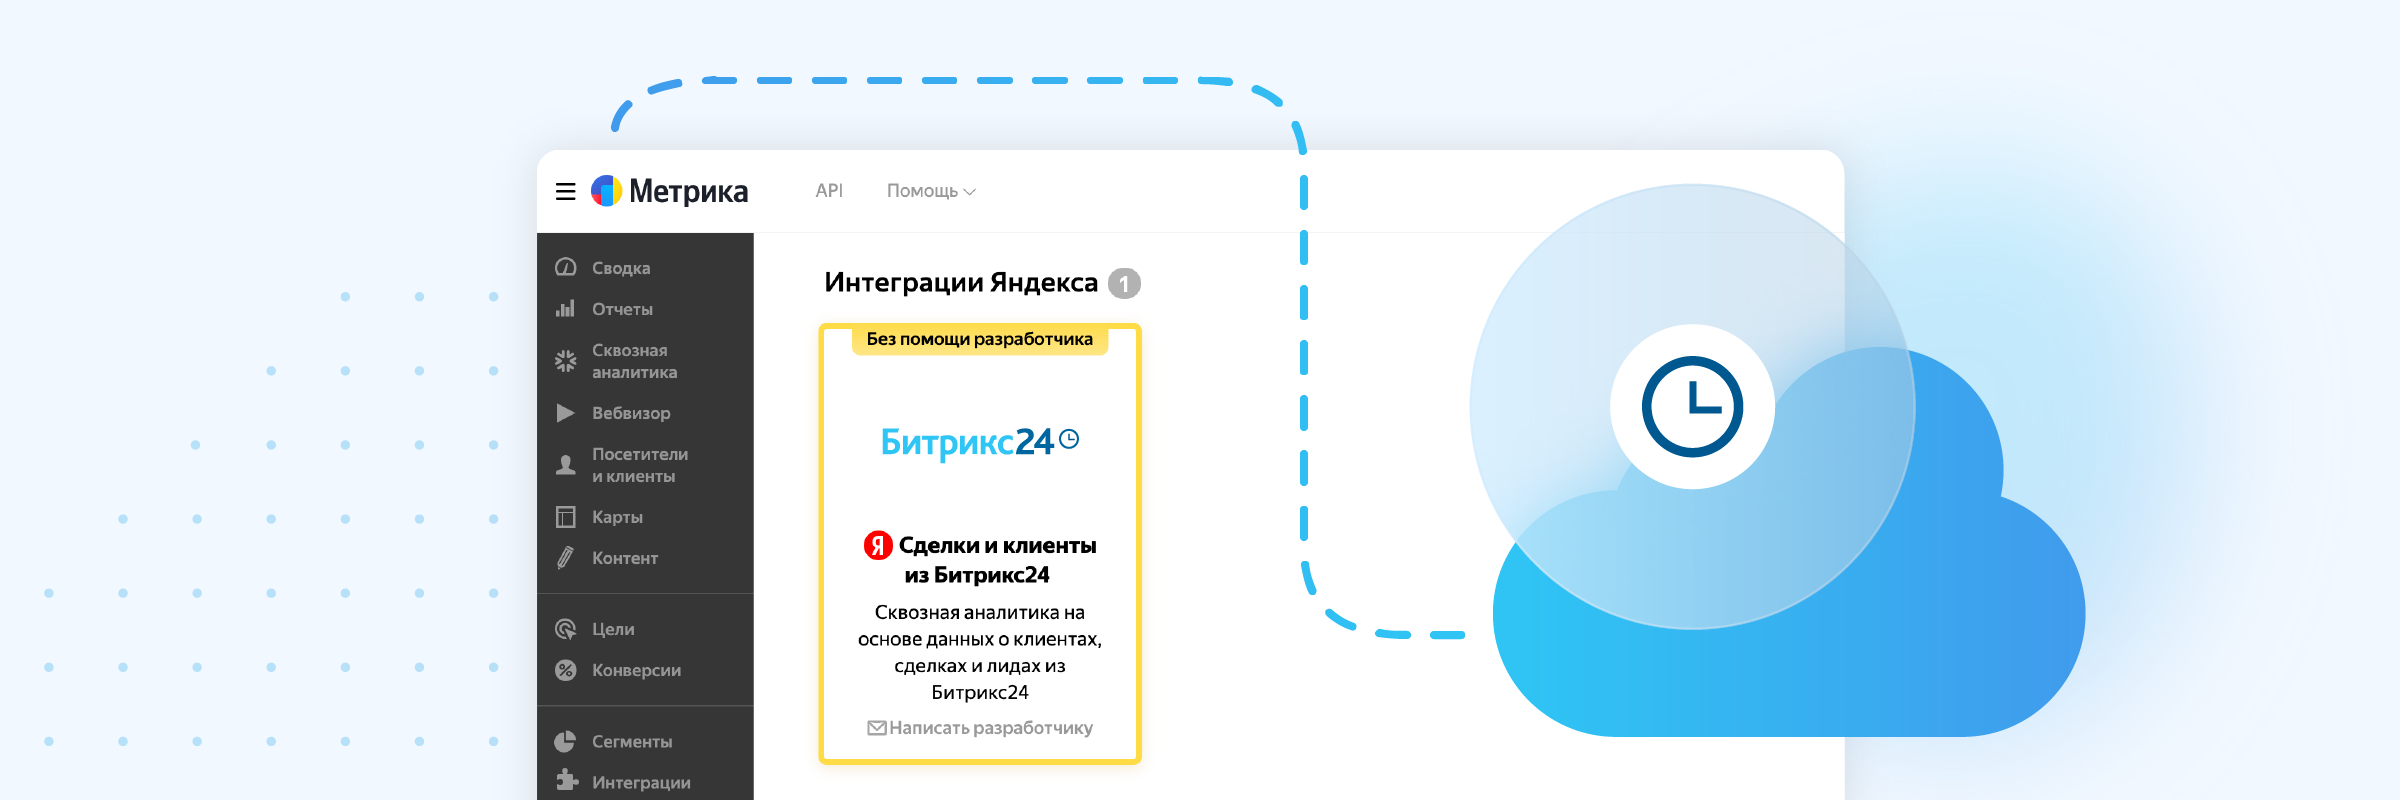 Яндекс.Метрика выпустила официальную интеграцию с Битрикс24